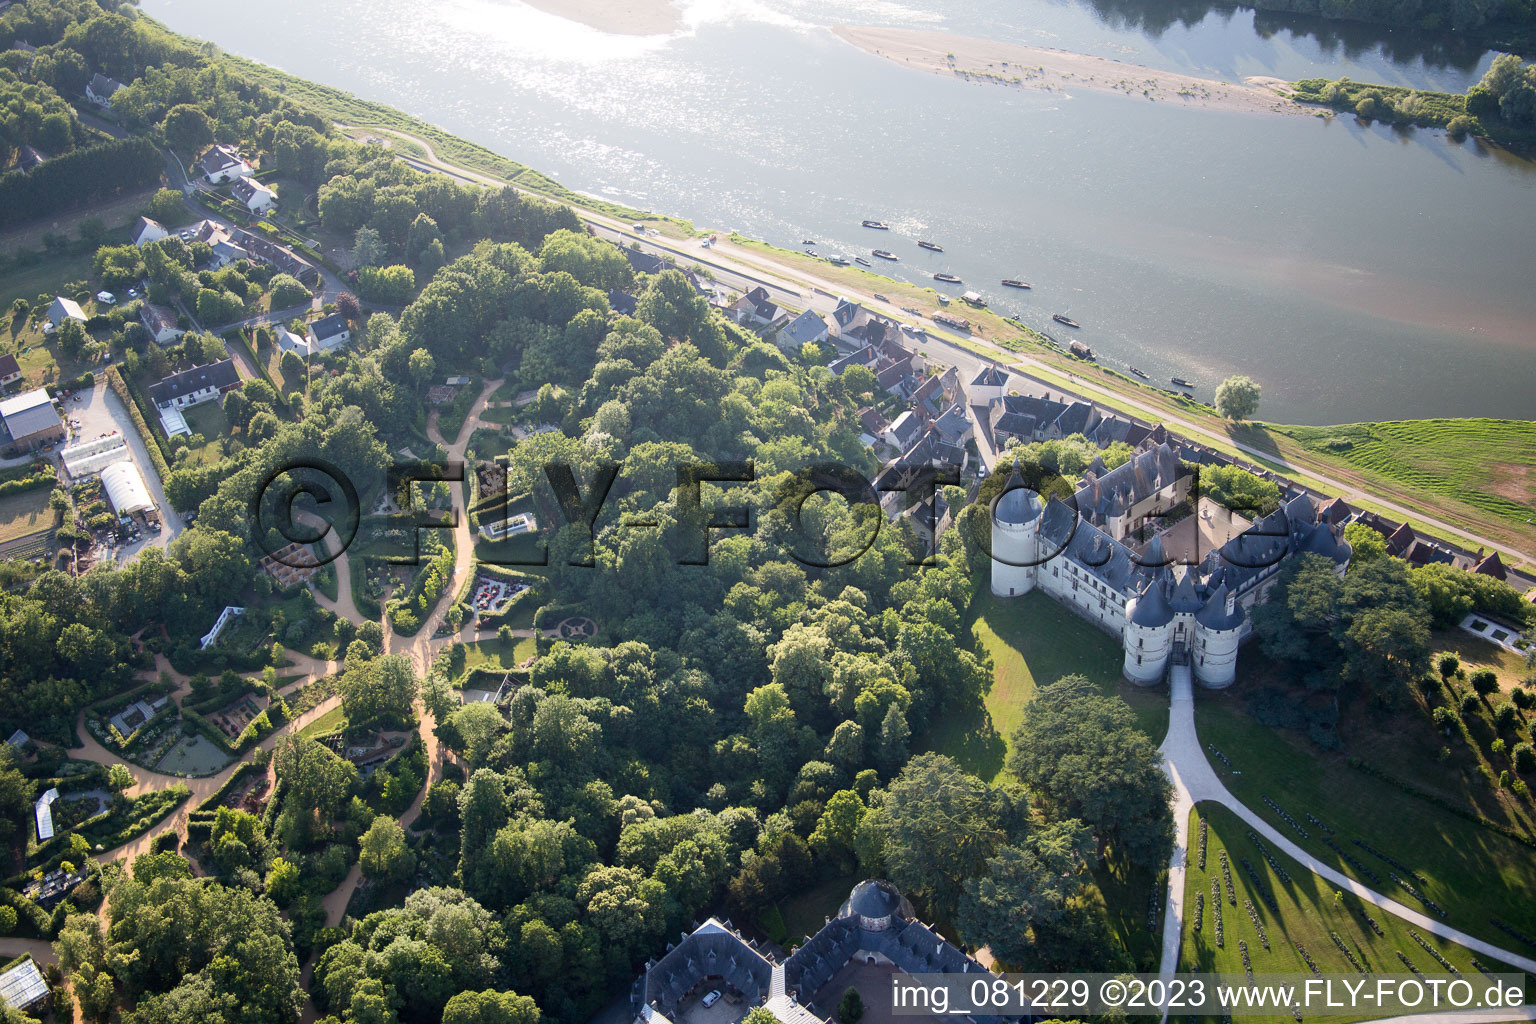 Photographie aérienne de Chaumont-sur-Loire dans le département Loir et Cher, France